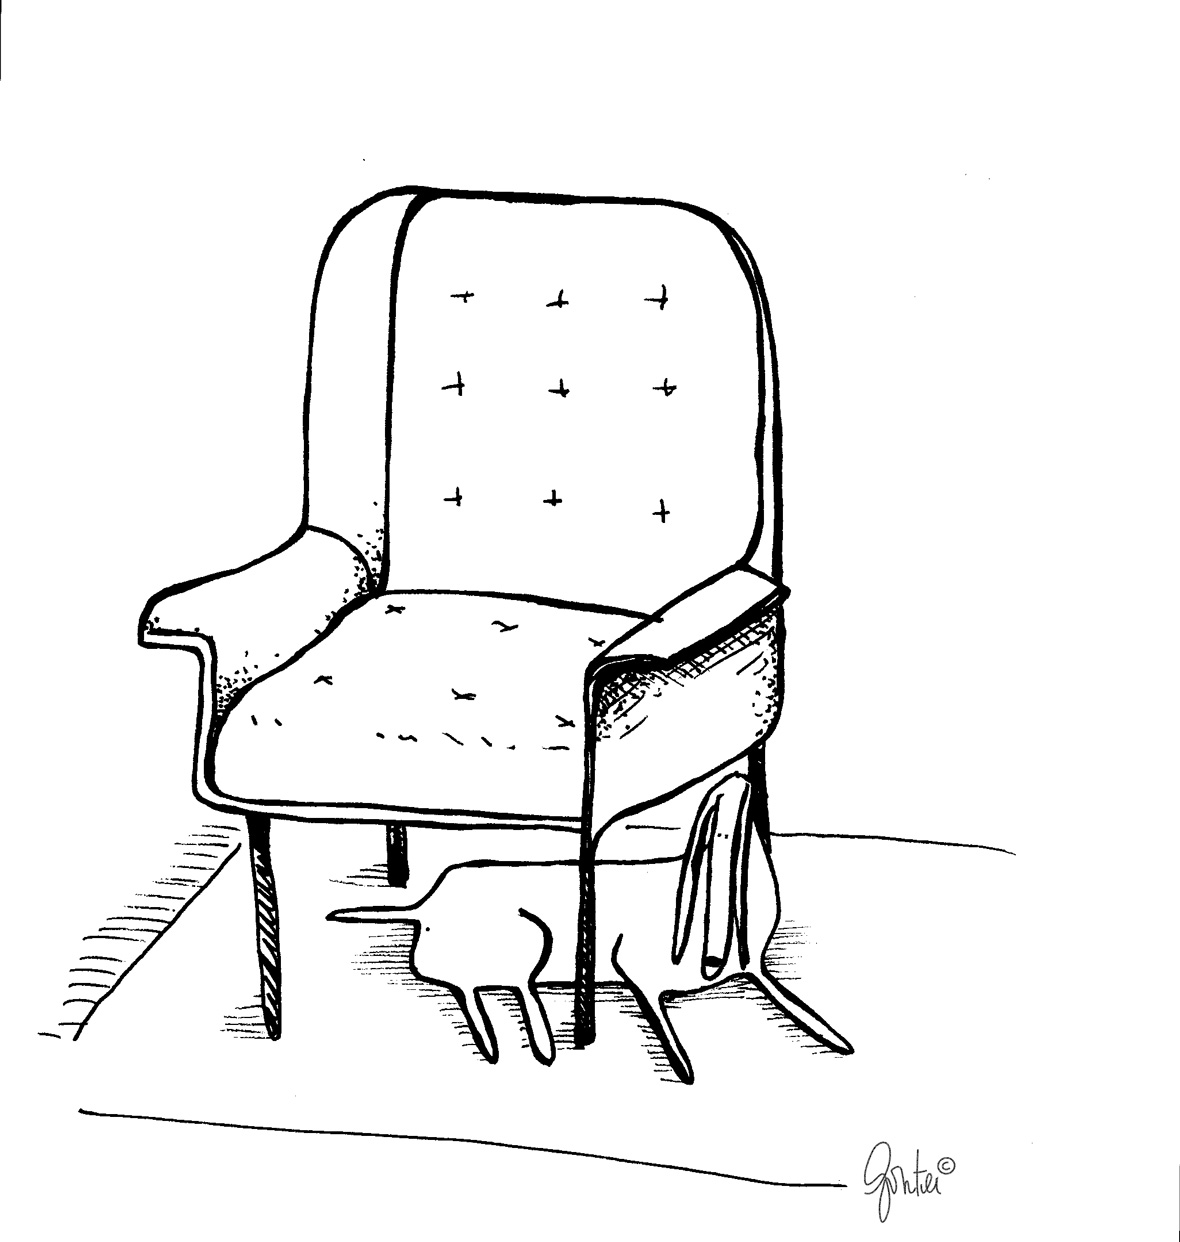 Le fauteuil d'Anita